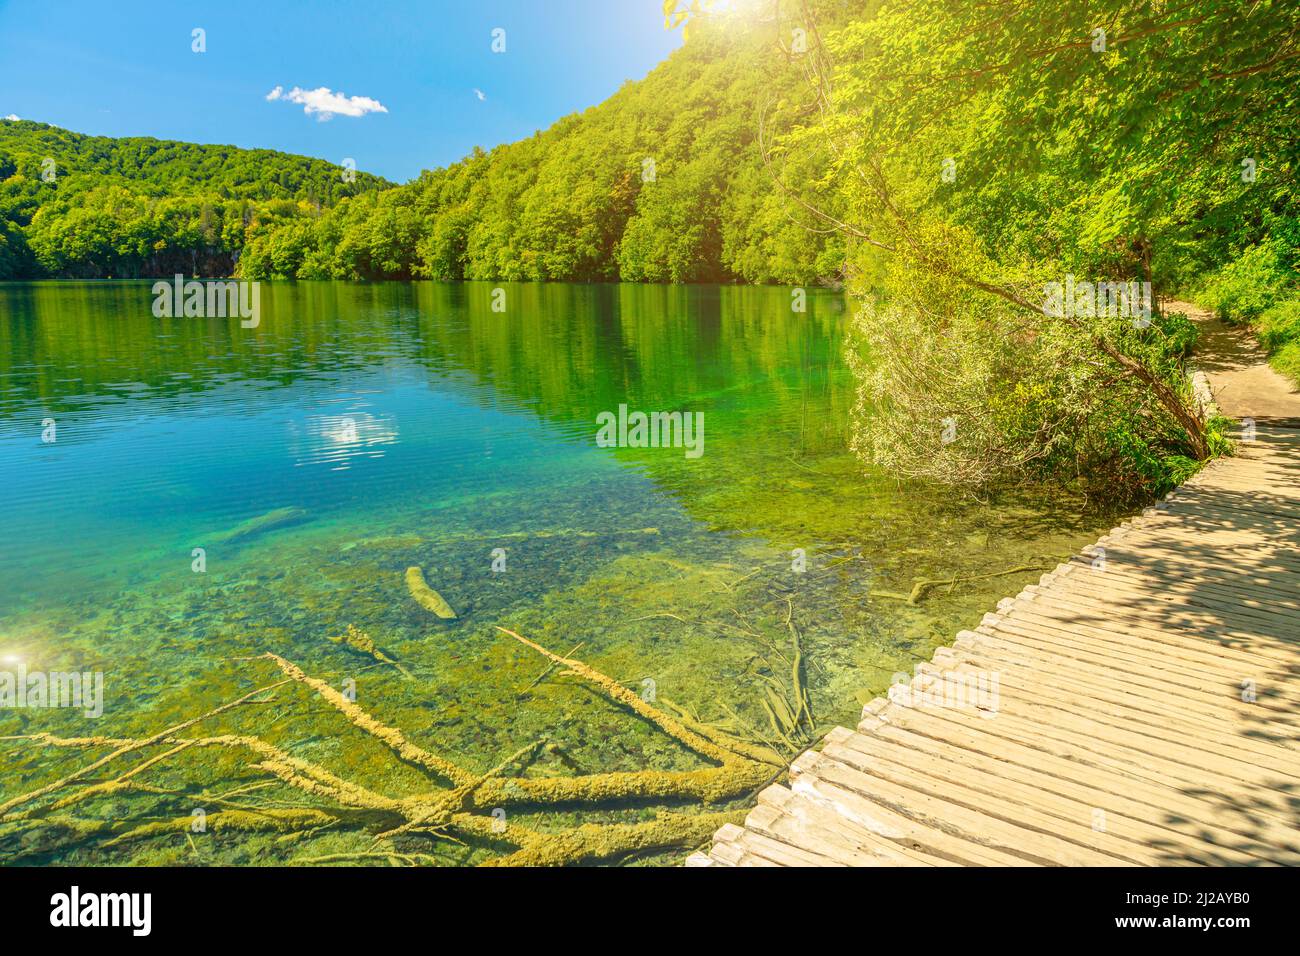 Molo di legno del Parco Nazionale dei Laghi di Plitvice in Croazia nella regione di Lika. Patrimonio mondiale dell'UNESCO della Croazia di nome Plitvicka Jezera. Foto Stock